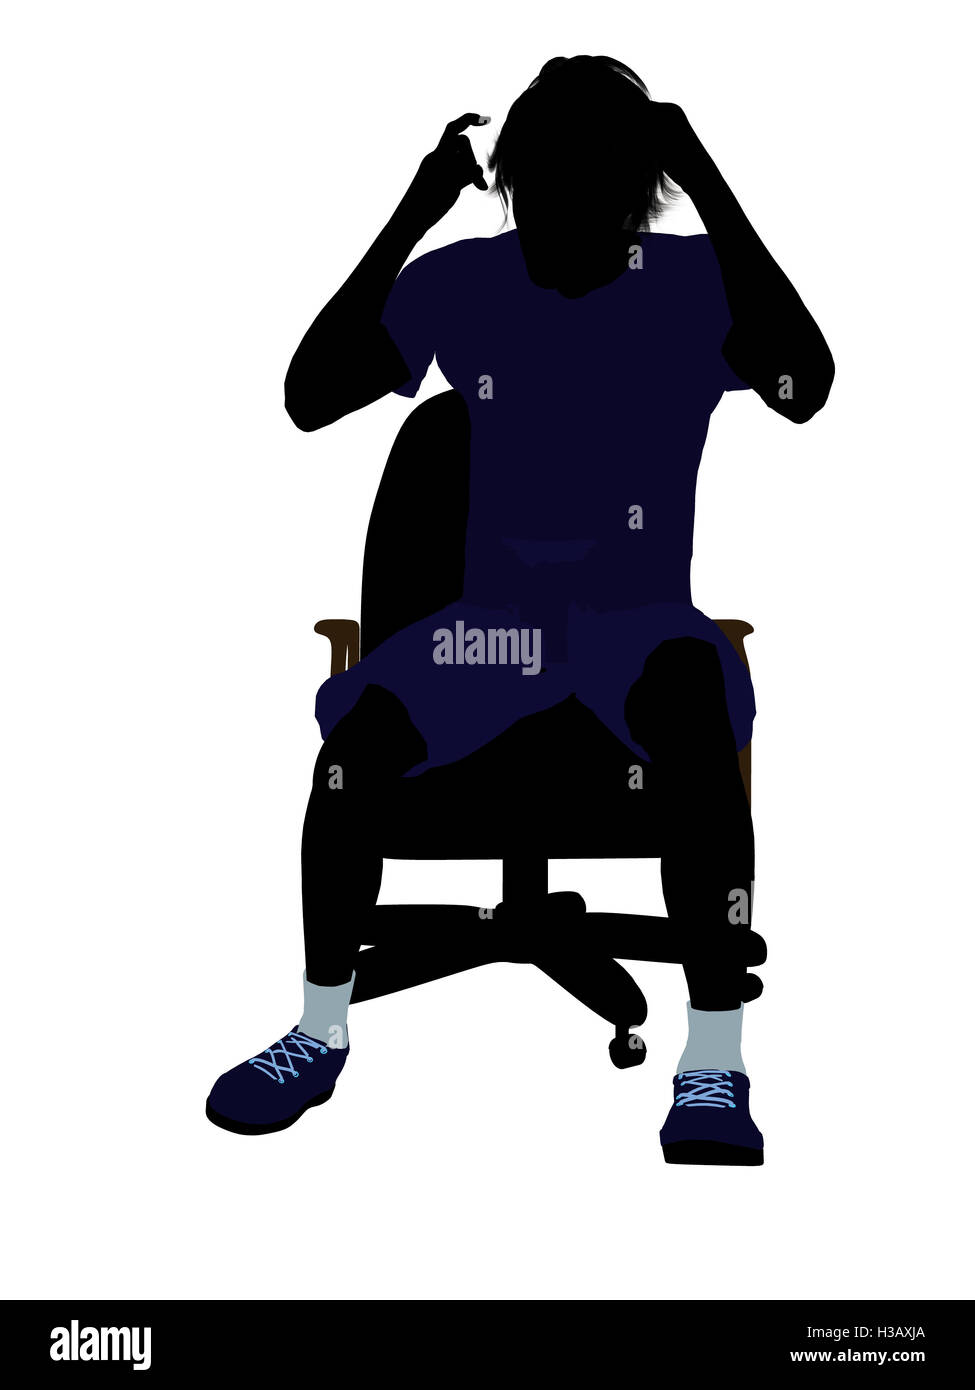 Tennisspieler, die sitzen In einem Stuhl Illustration Silhouette Stockfoto